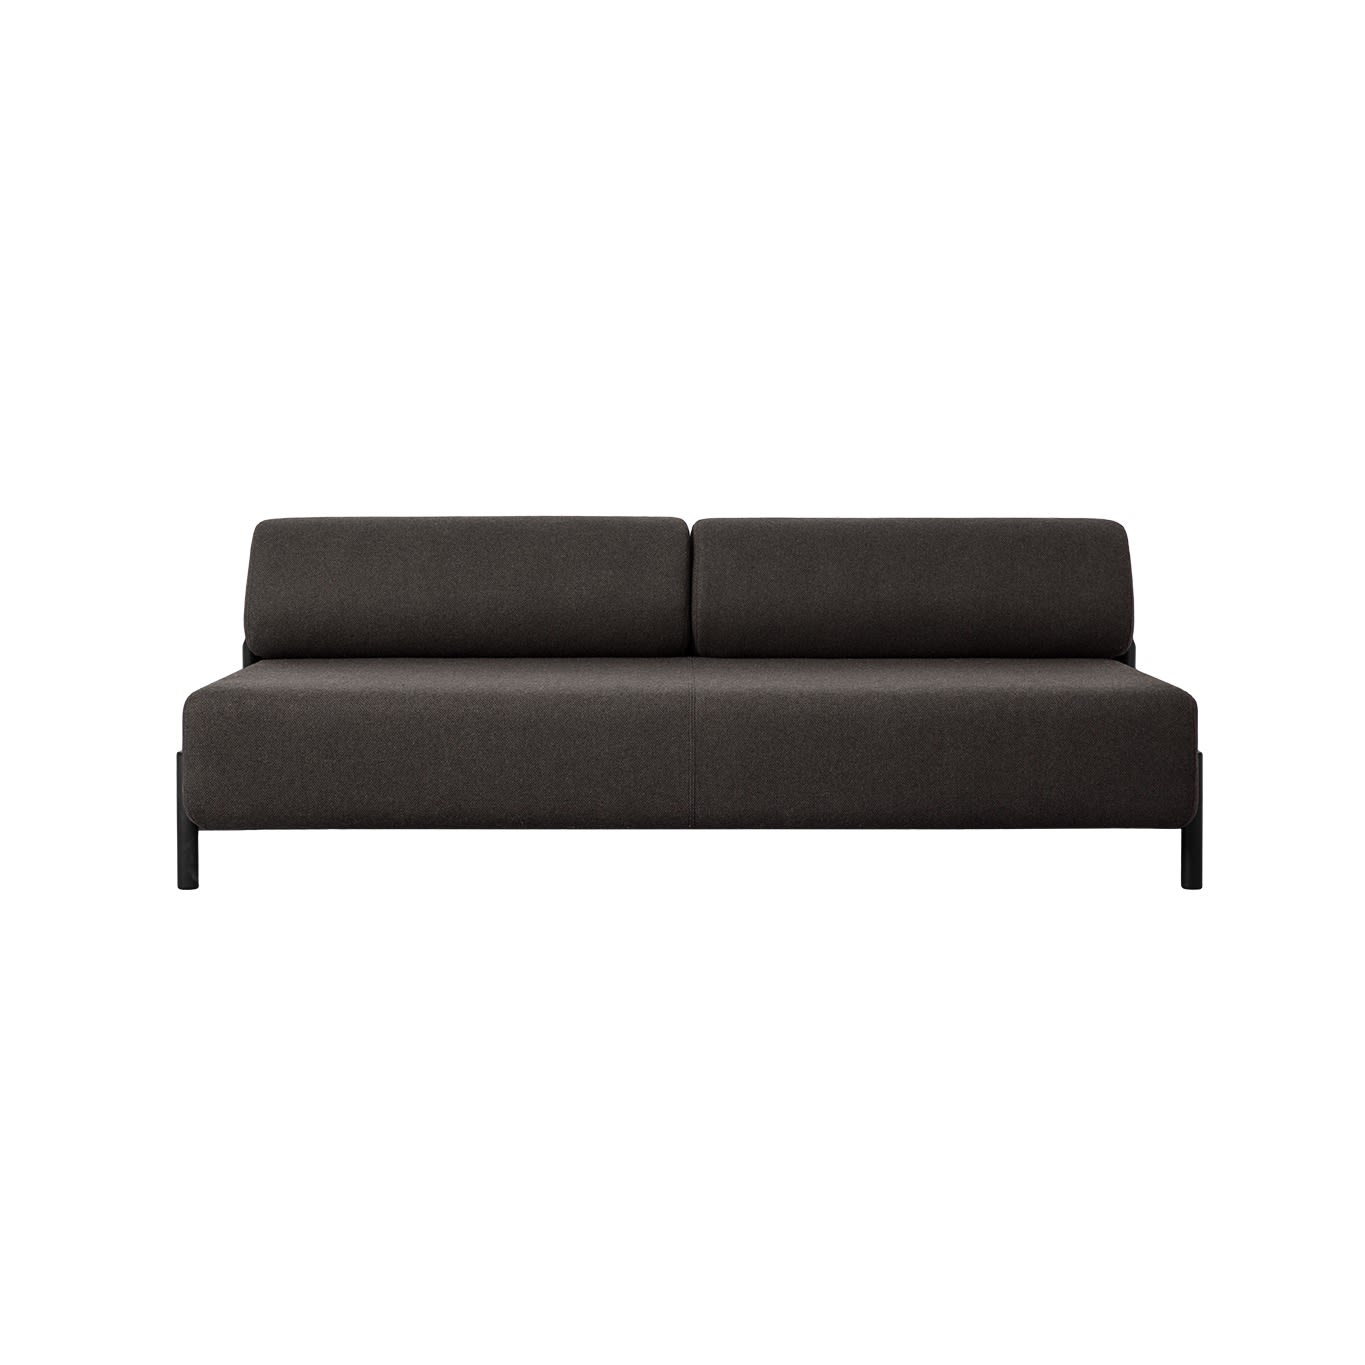 2-seater Sofa, Brown-Black